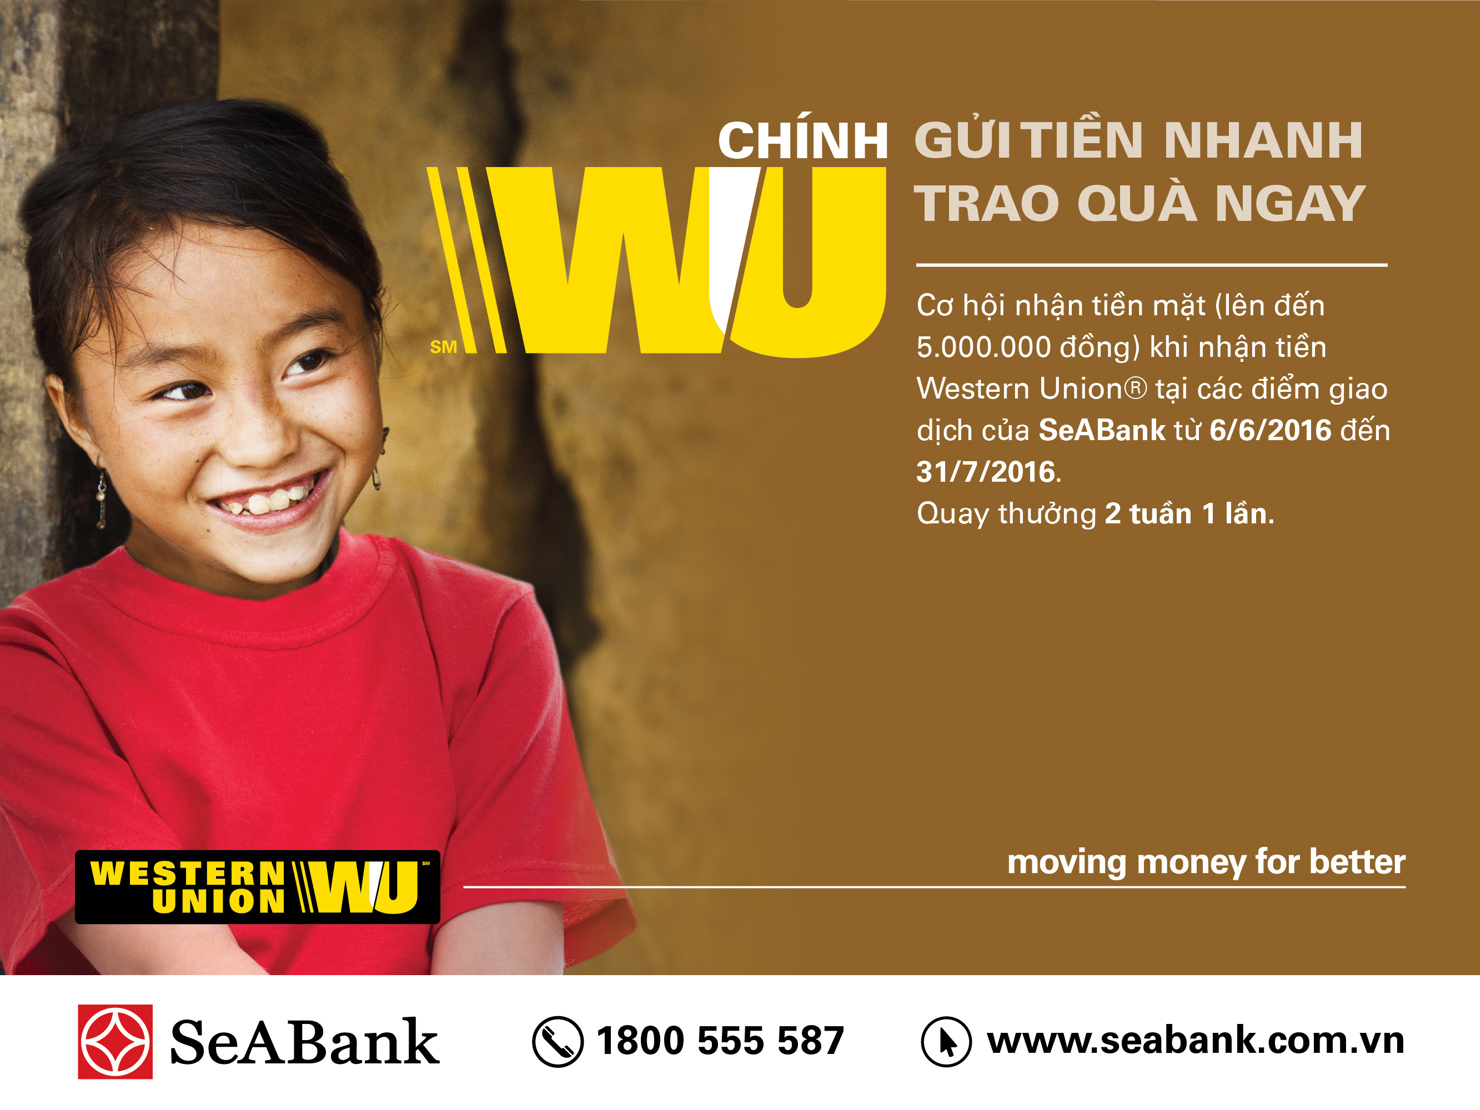 Khuyến mãi lớn dành cho khách hàng nhận tiền Western Union tại Seabank.